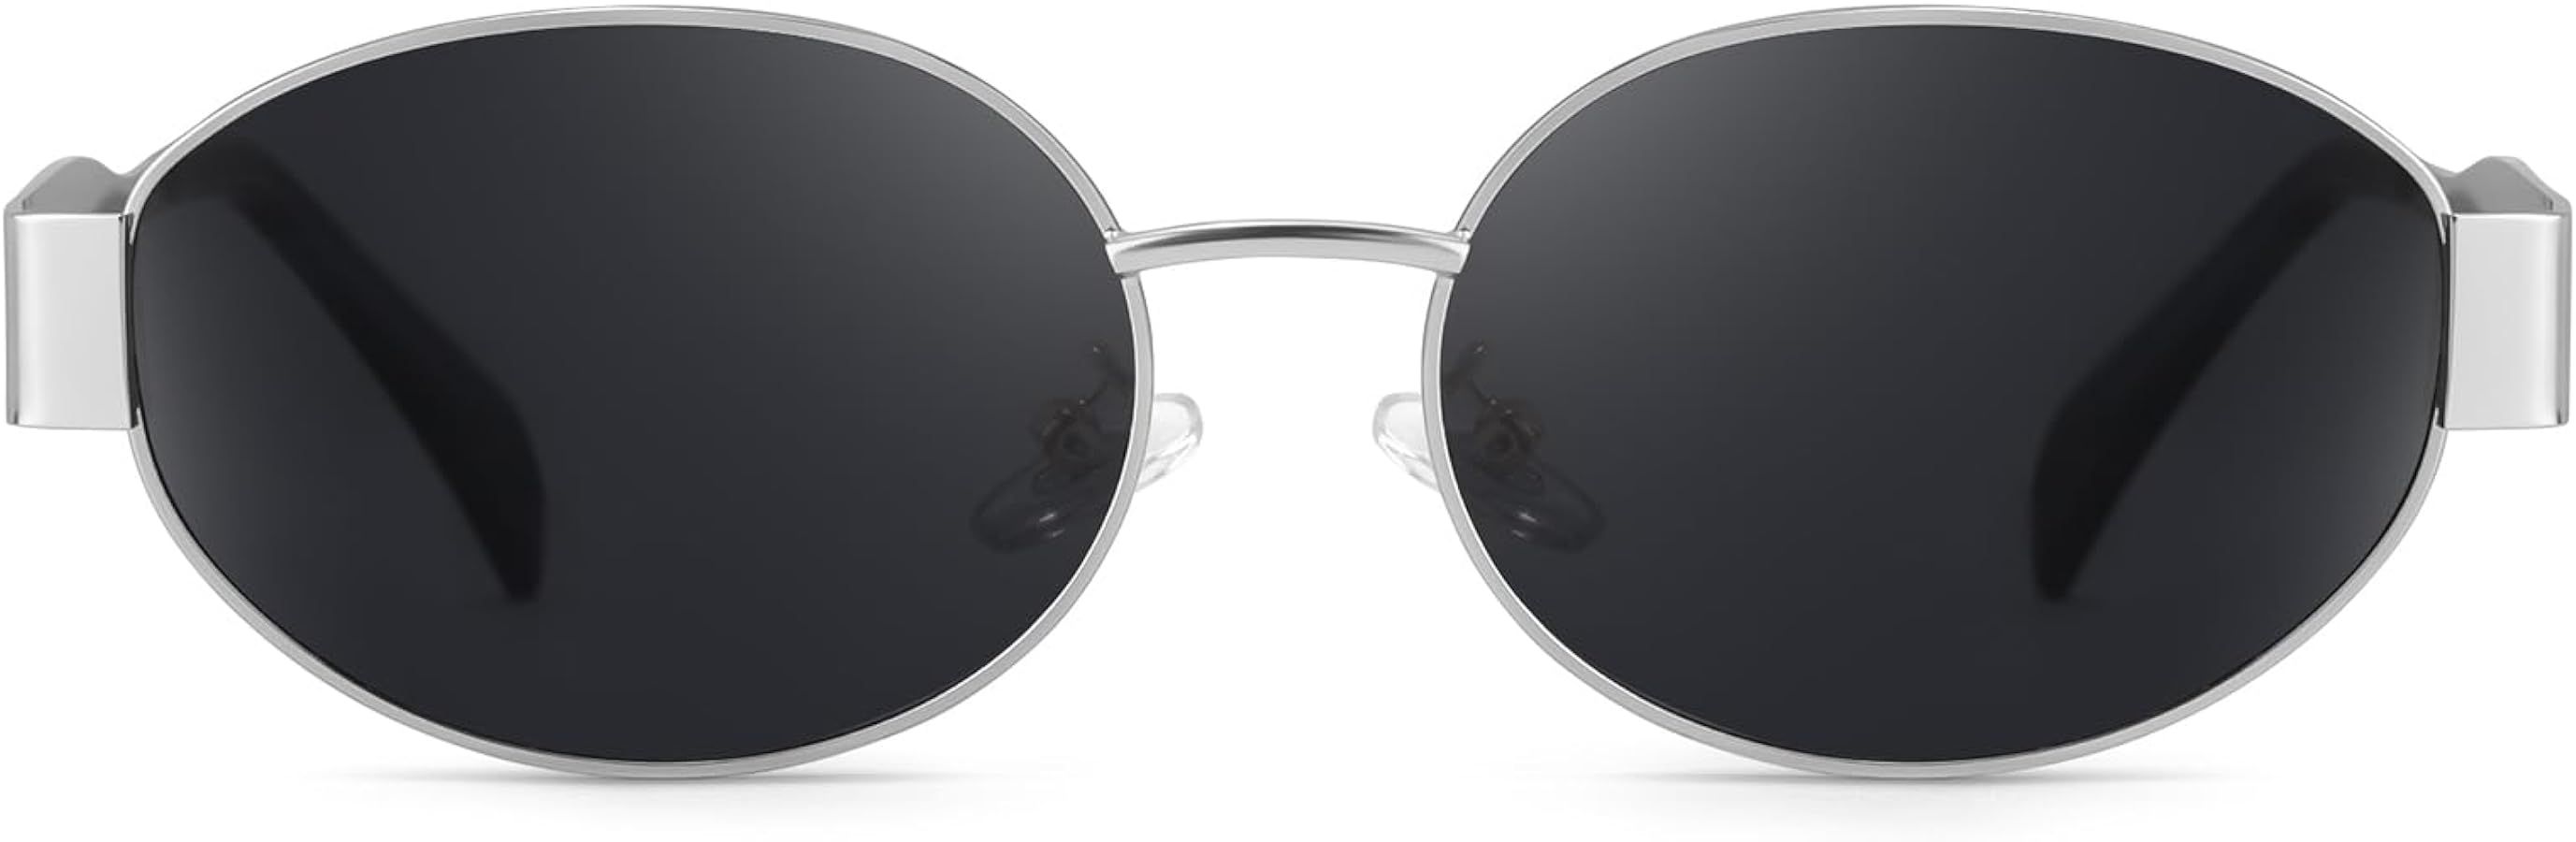 IGnaef Retro Oval Sunglasses for Women Trendy Designer Sun Glasses Womens Shades Fashion Accessor... | Amazon (US)